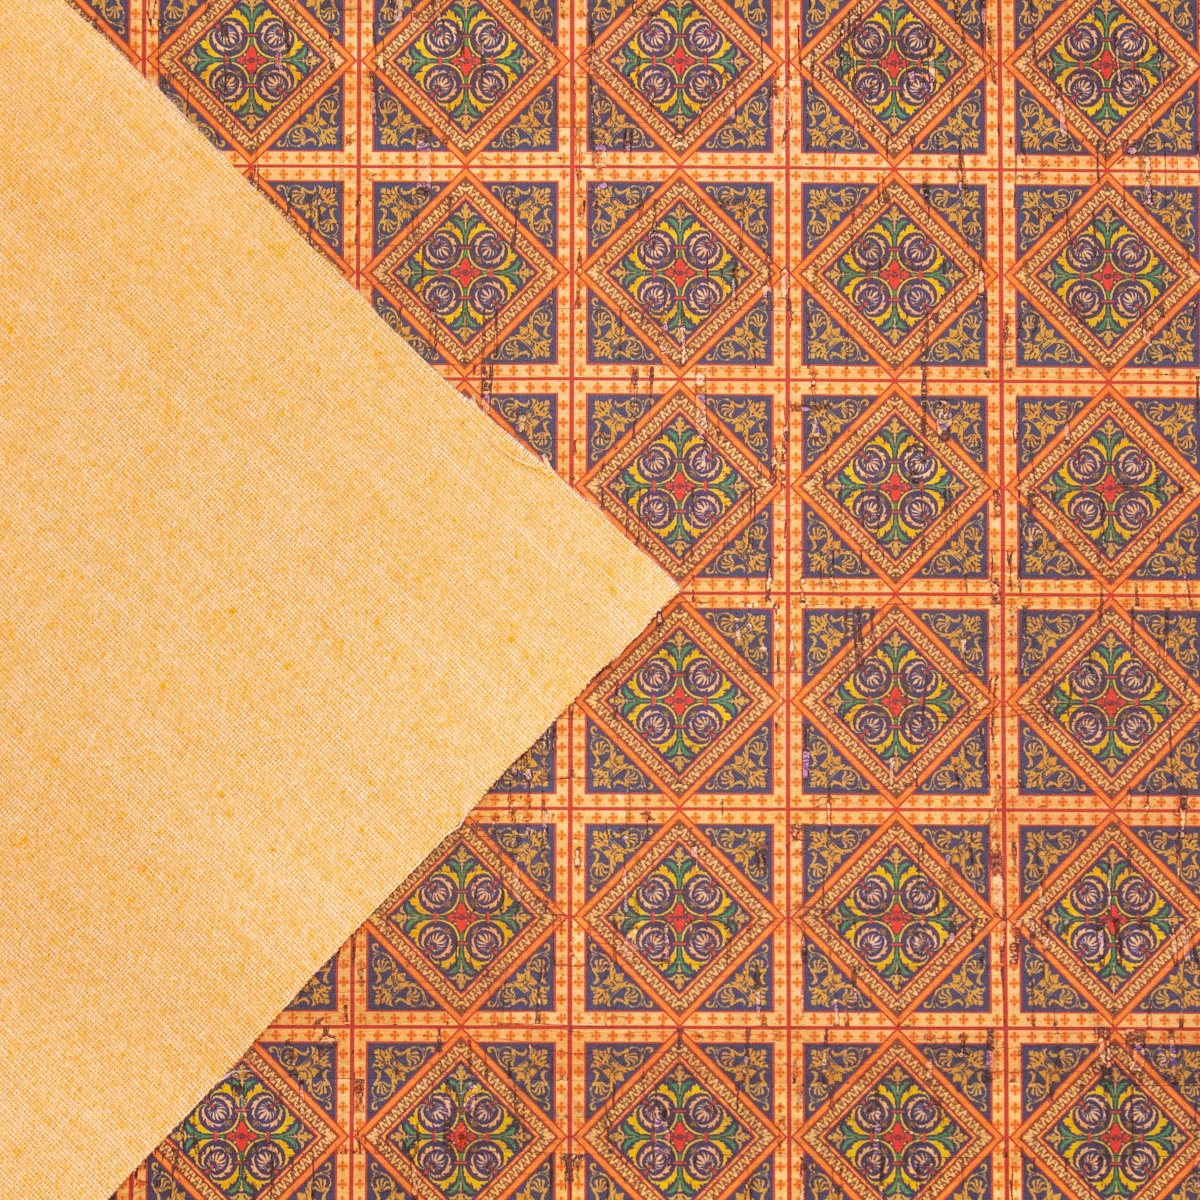 Tissu de liège de modèle de mosaïque de carreaux de céramique carrés orange traditionnels portugais COF-260